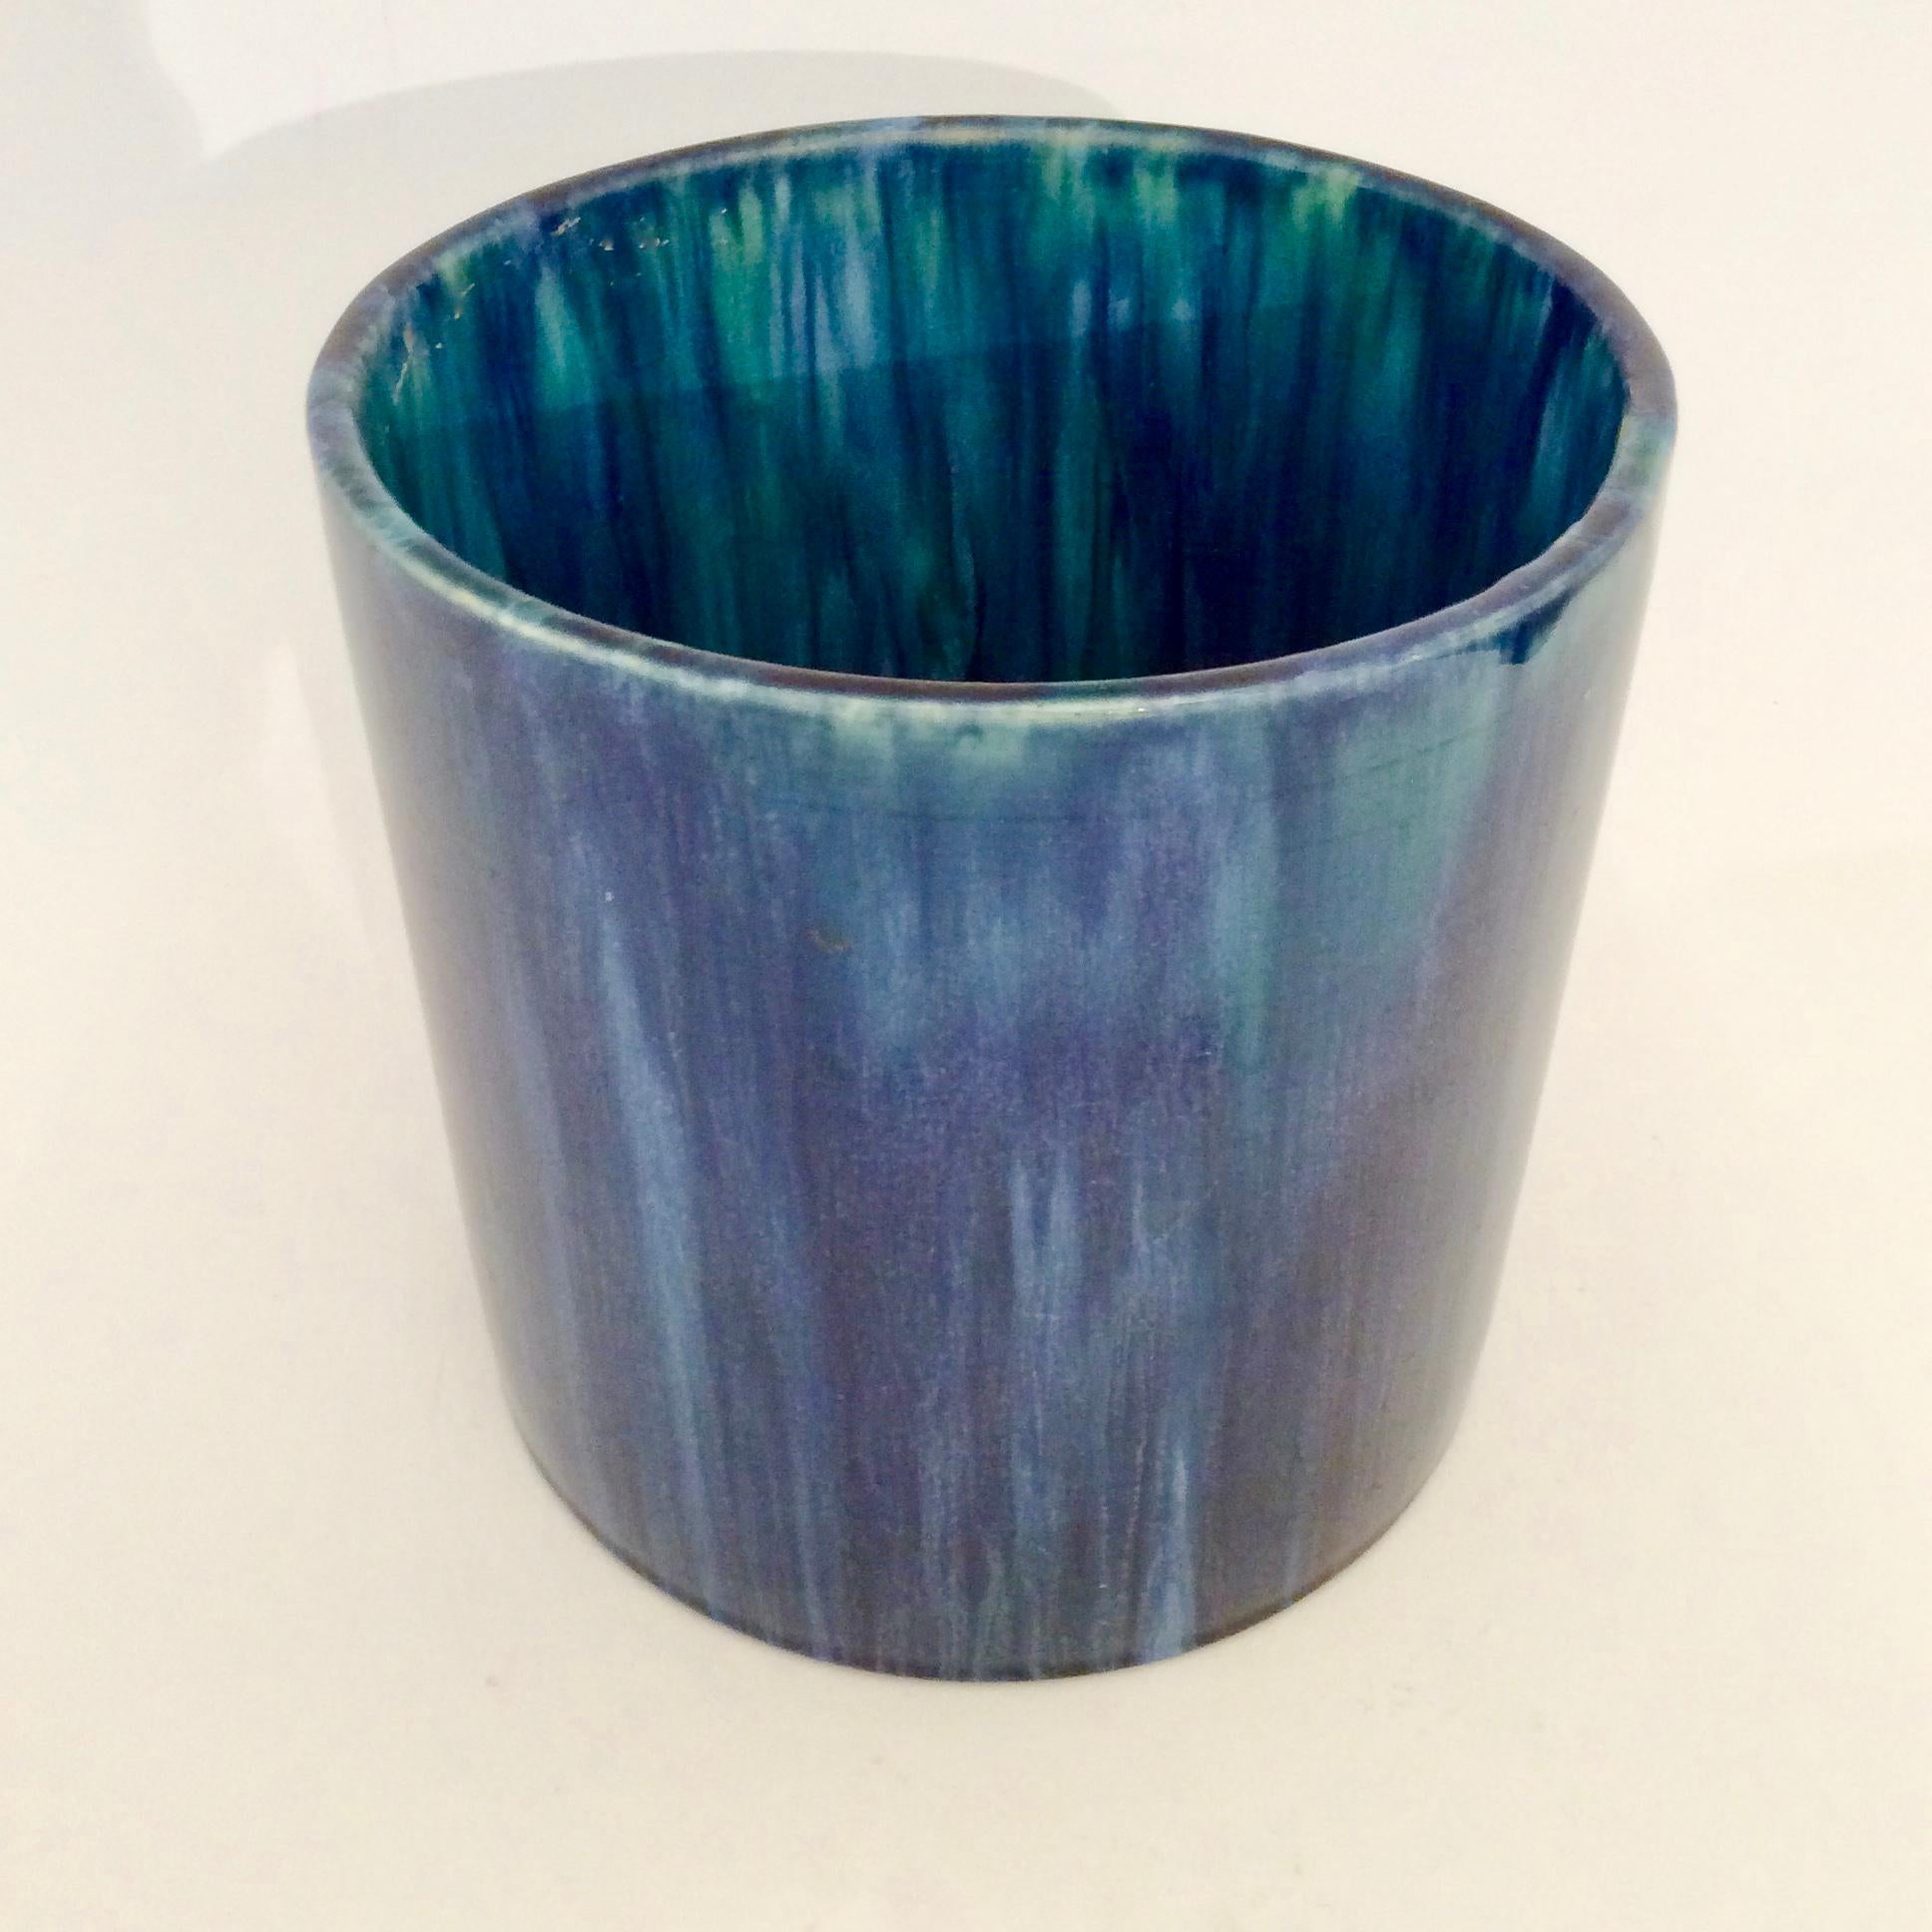 Belgian Serrurier-Bovy Blue Enameled Earthenware Cylinder Vase, 1905, Belgium For Sale